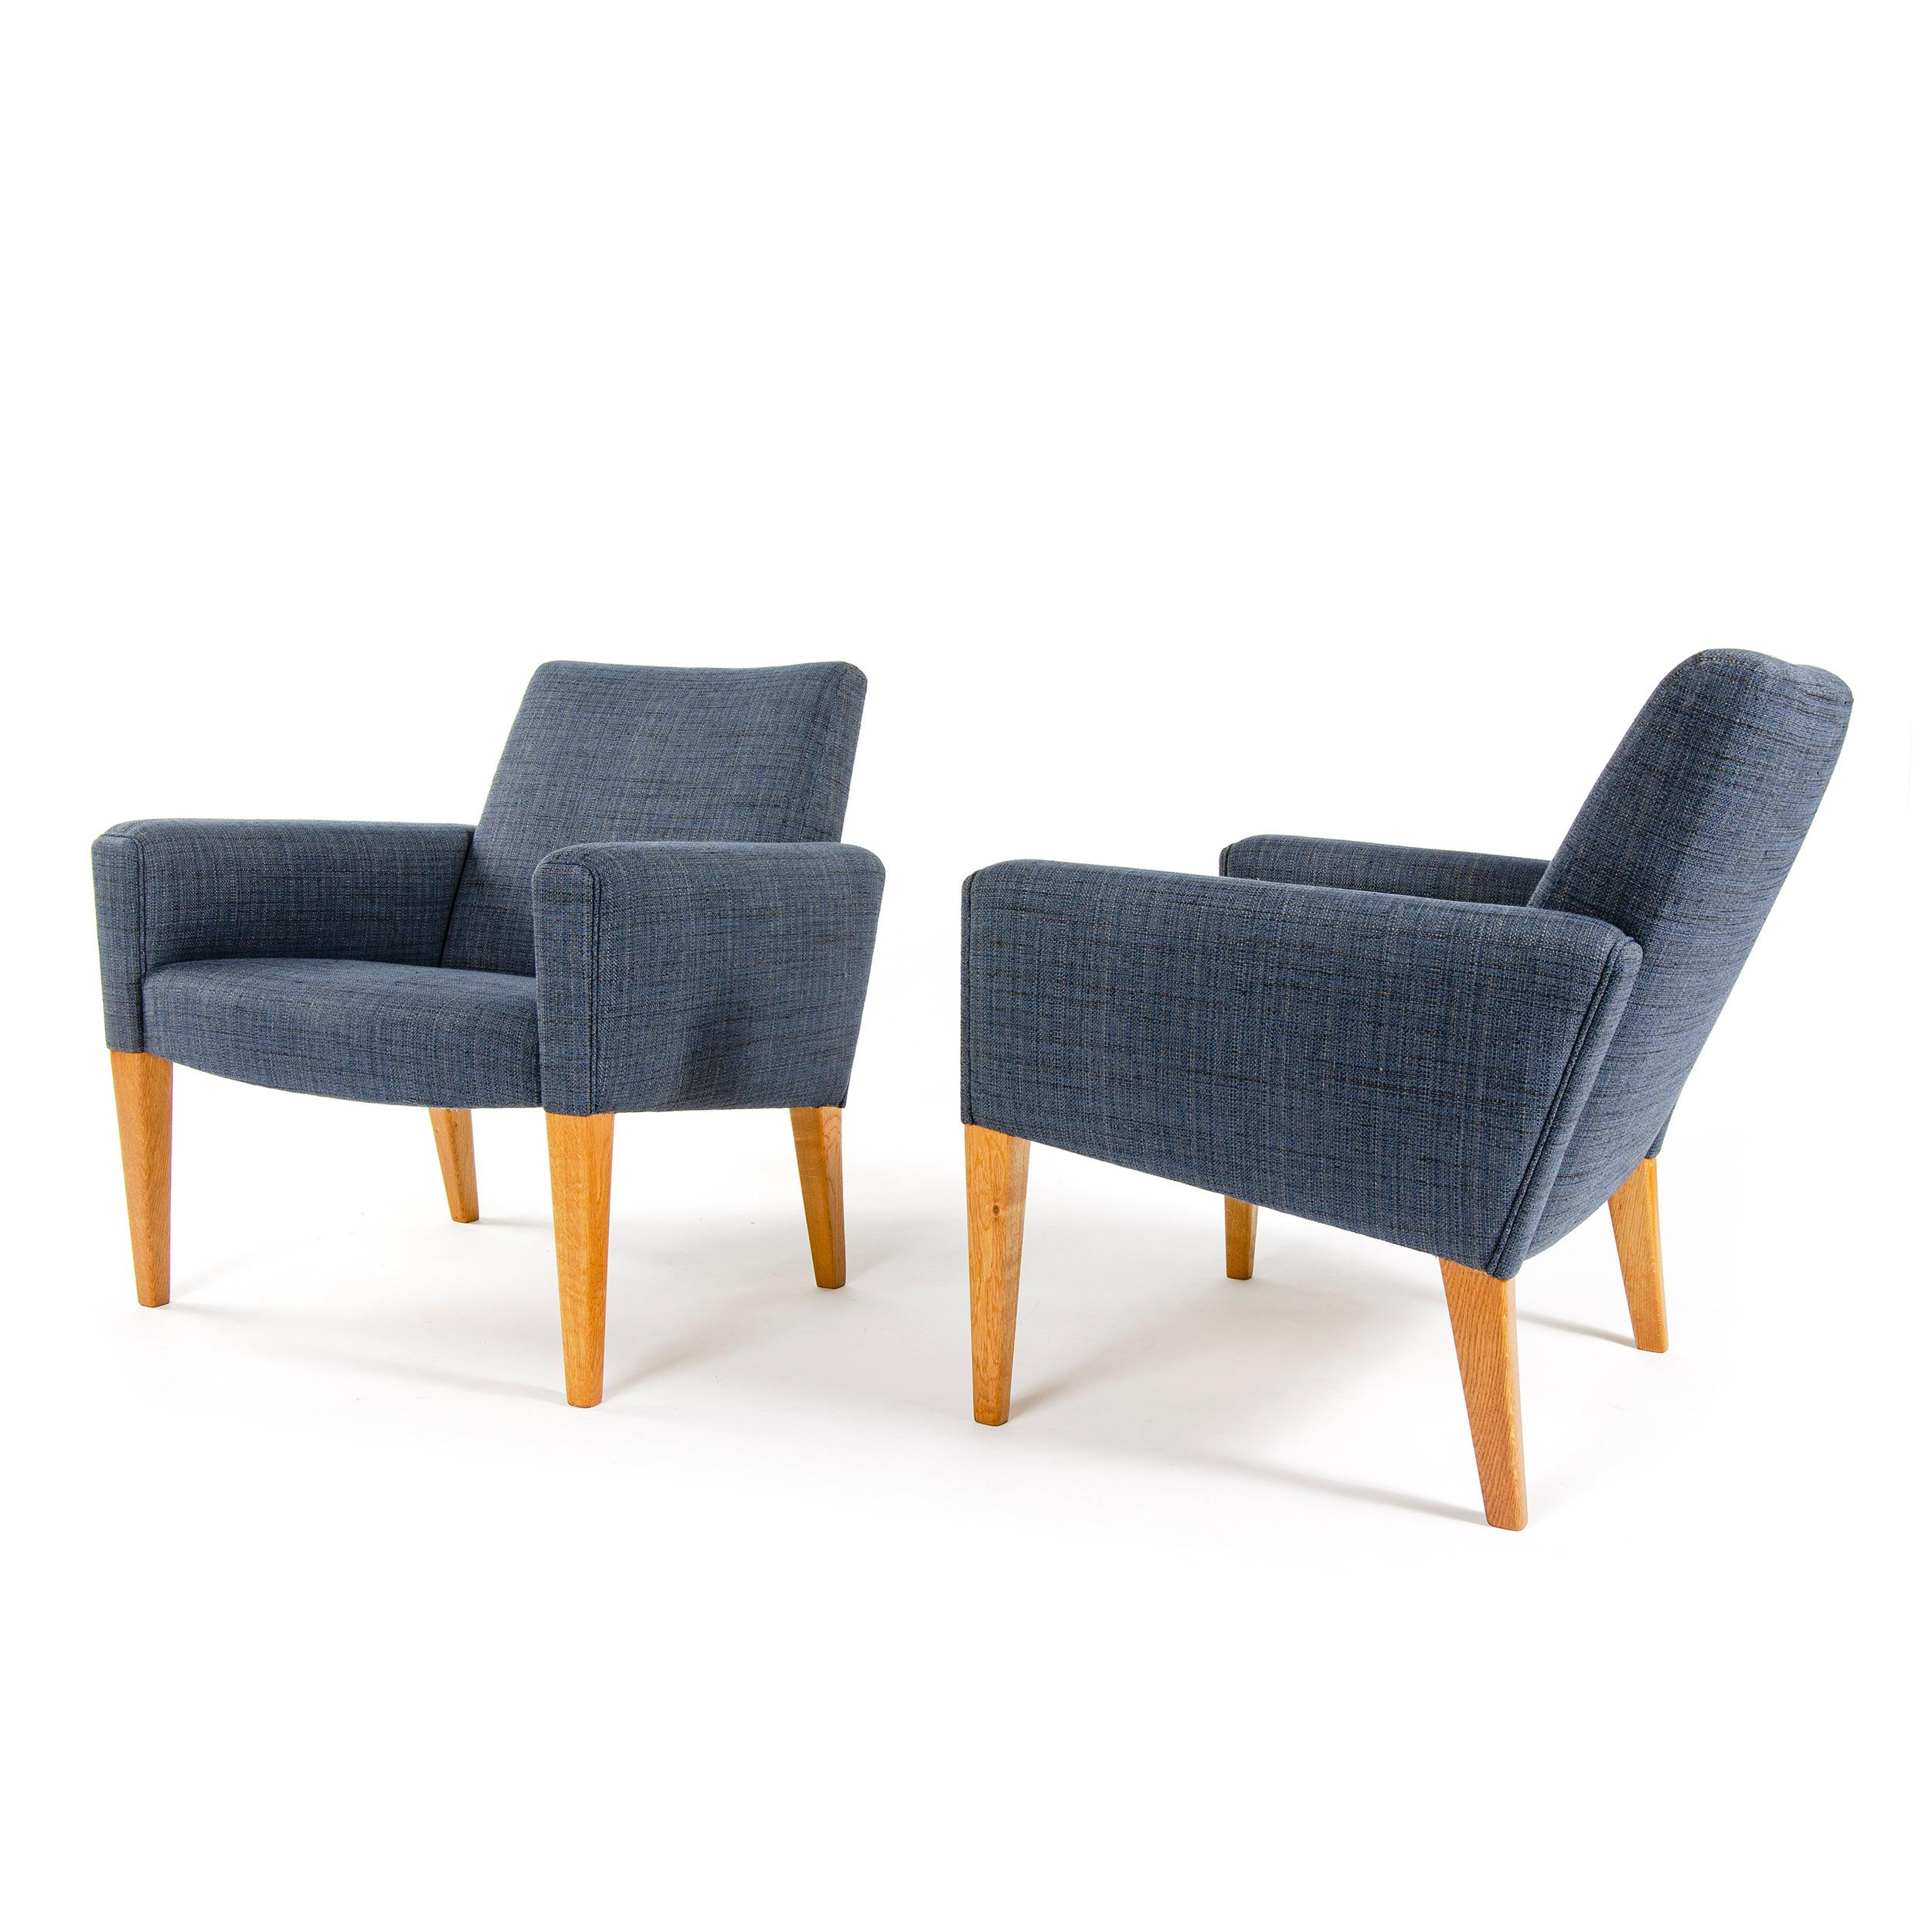 Ein Paar Loungesessel, neu gepolstert mit einem dunkelblauen Baumwoll-Leinen-Gewebe, auf konischen Holzbeinen. Entworfen von Hans Wegner, hergestellt von AP Stolen in Dänemark, ca. 1950er Jahre.